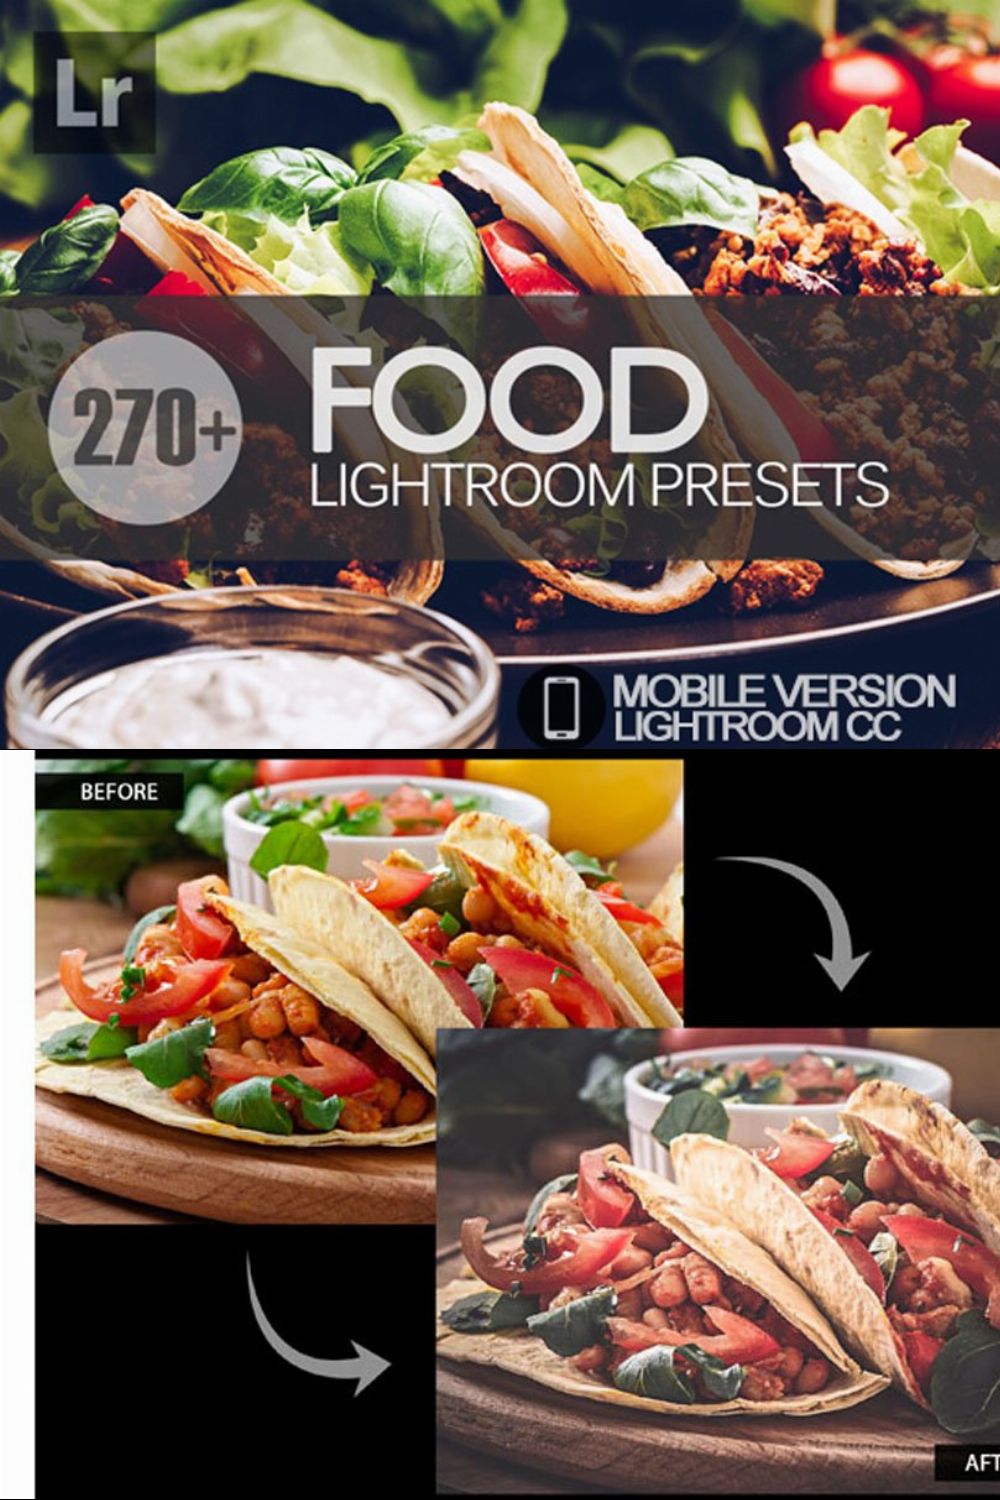 Food Lightroom Mobile Presets pinterest preview image.